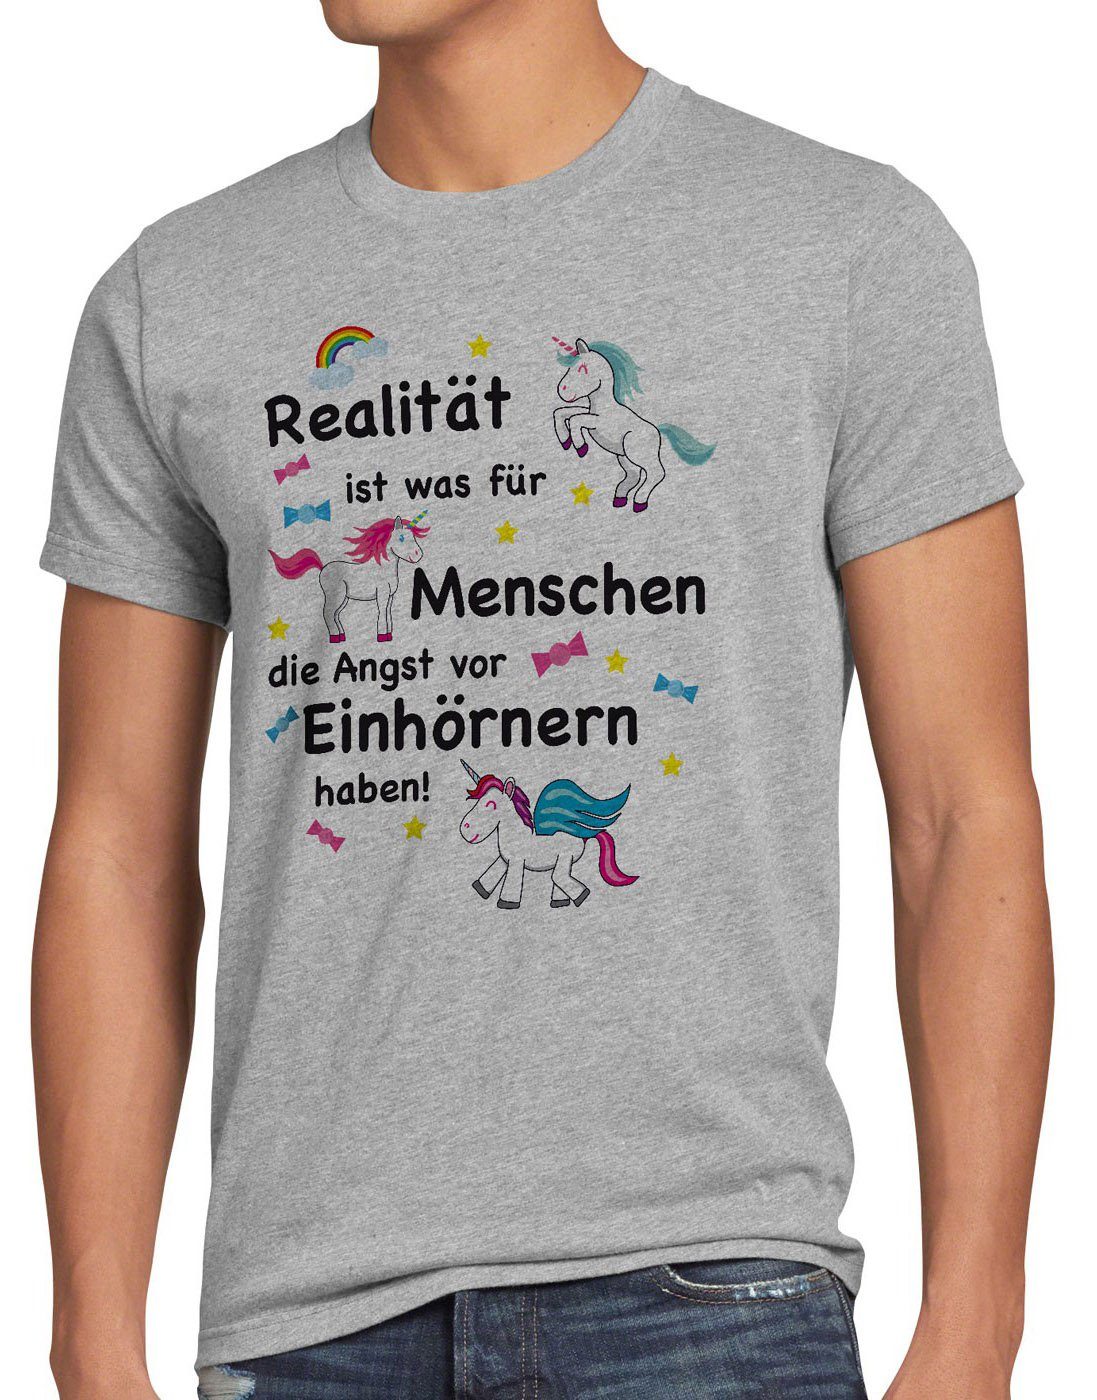 T-Shirt grau Herren ist style3 Einhorn Realität meliert Print-Shirt Menschen Einhörnern Unicorn haben Angst für